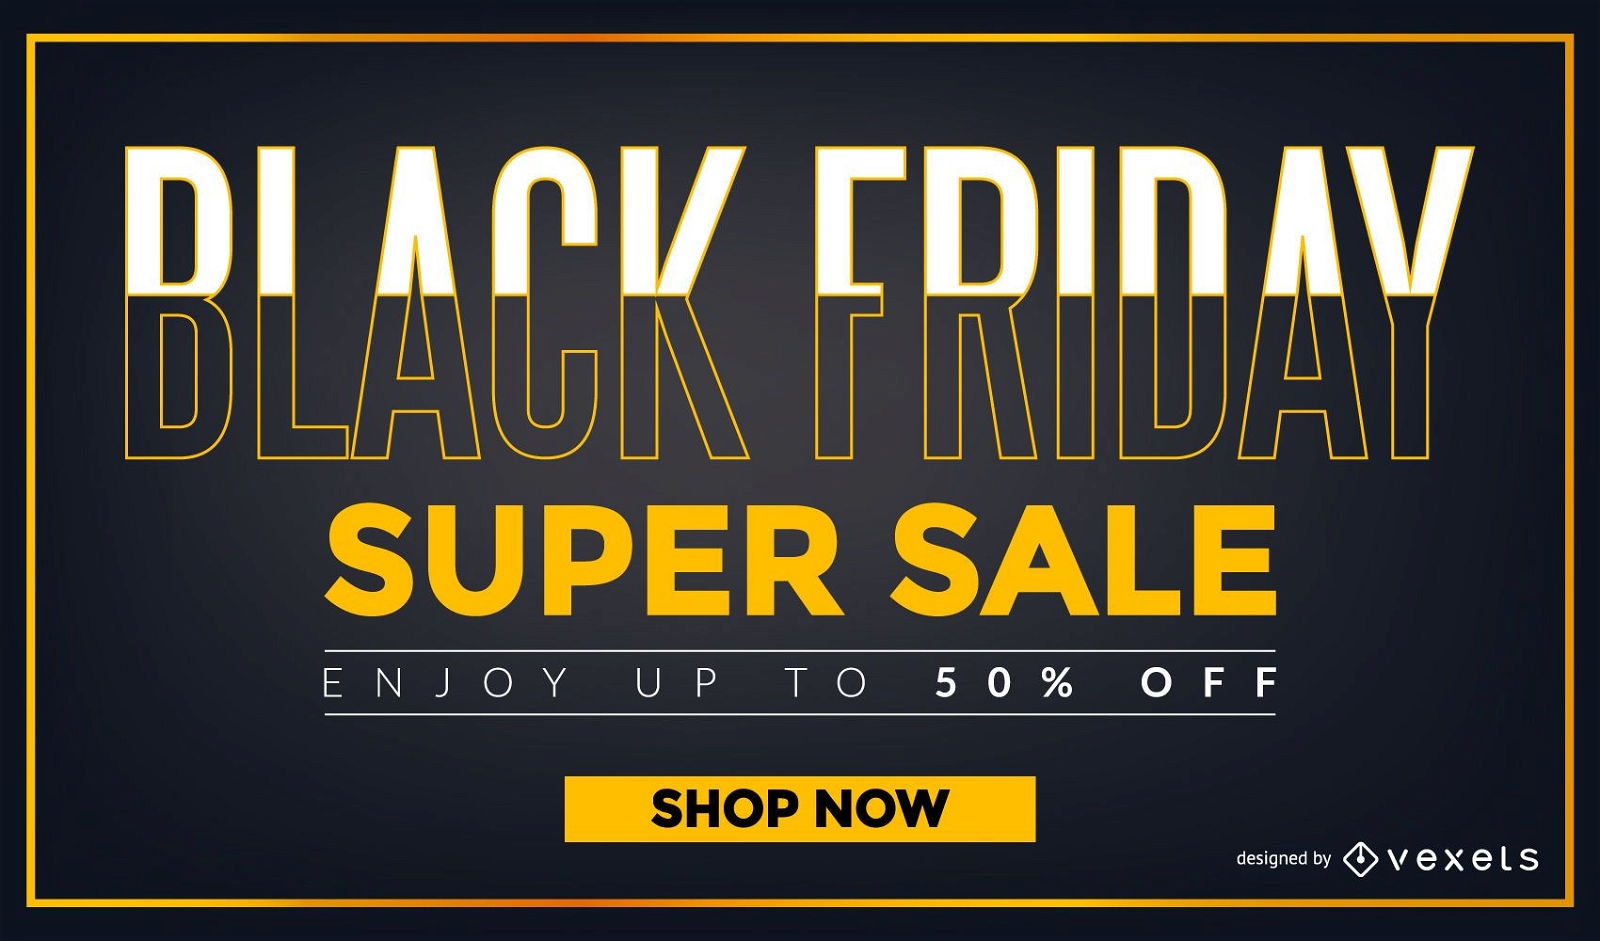 Black Friday Super Sale Design